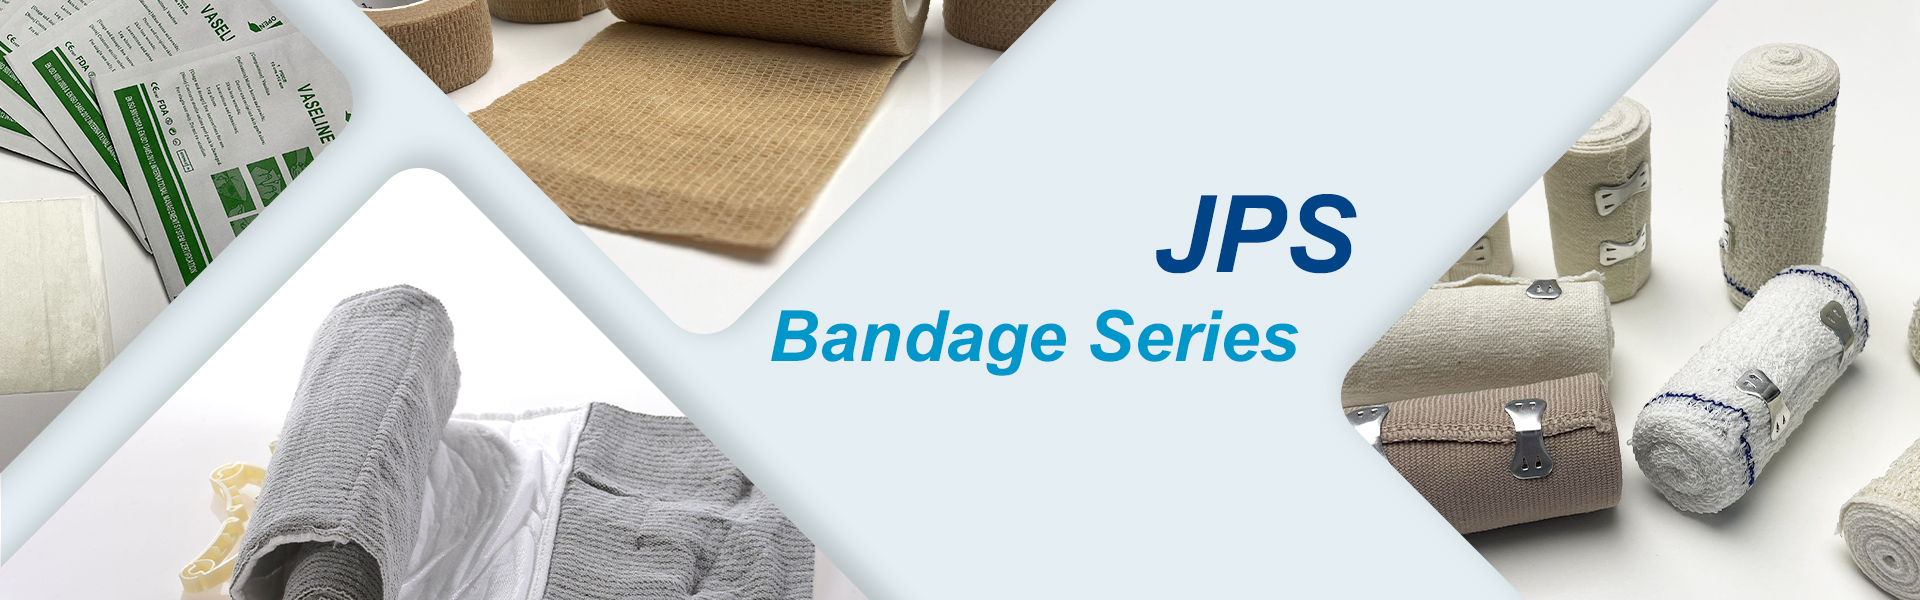 JPS Bandage